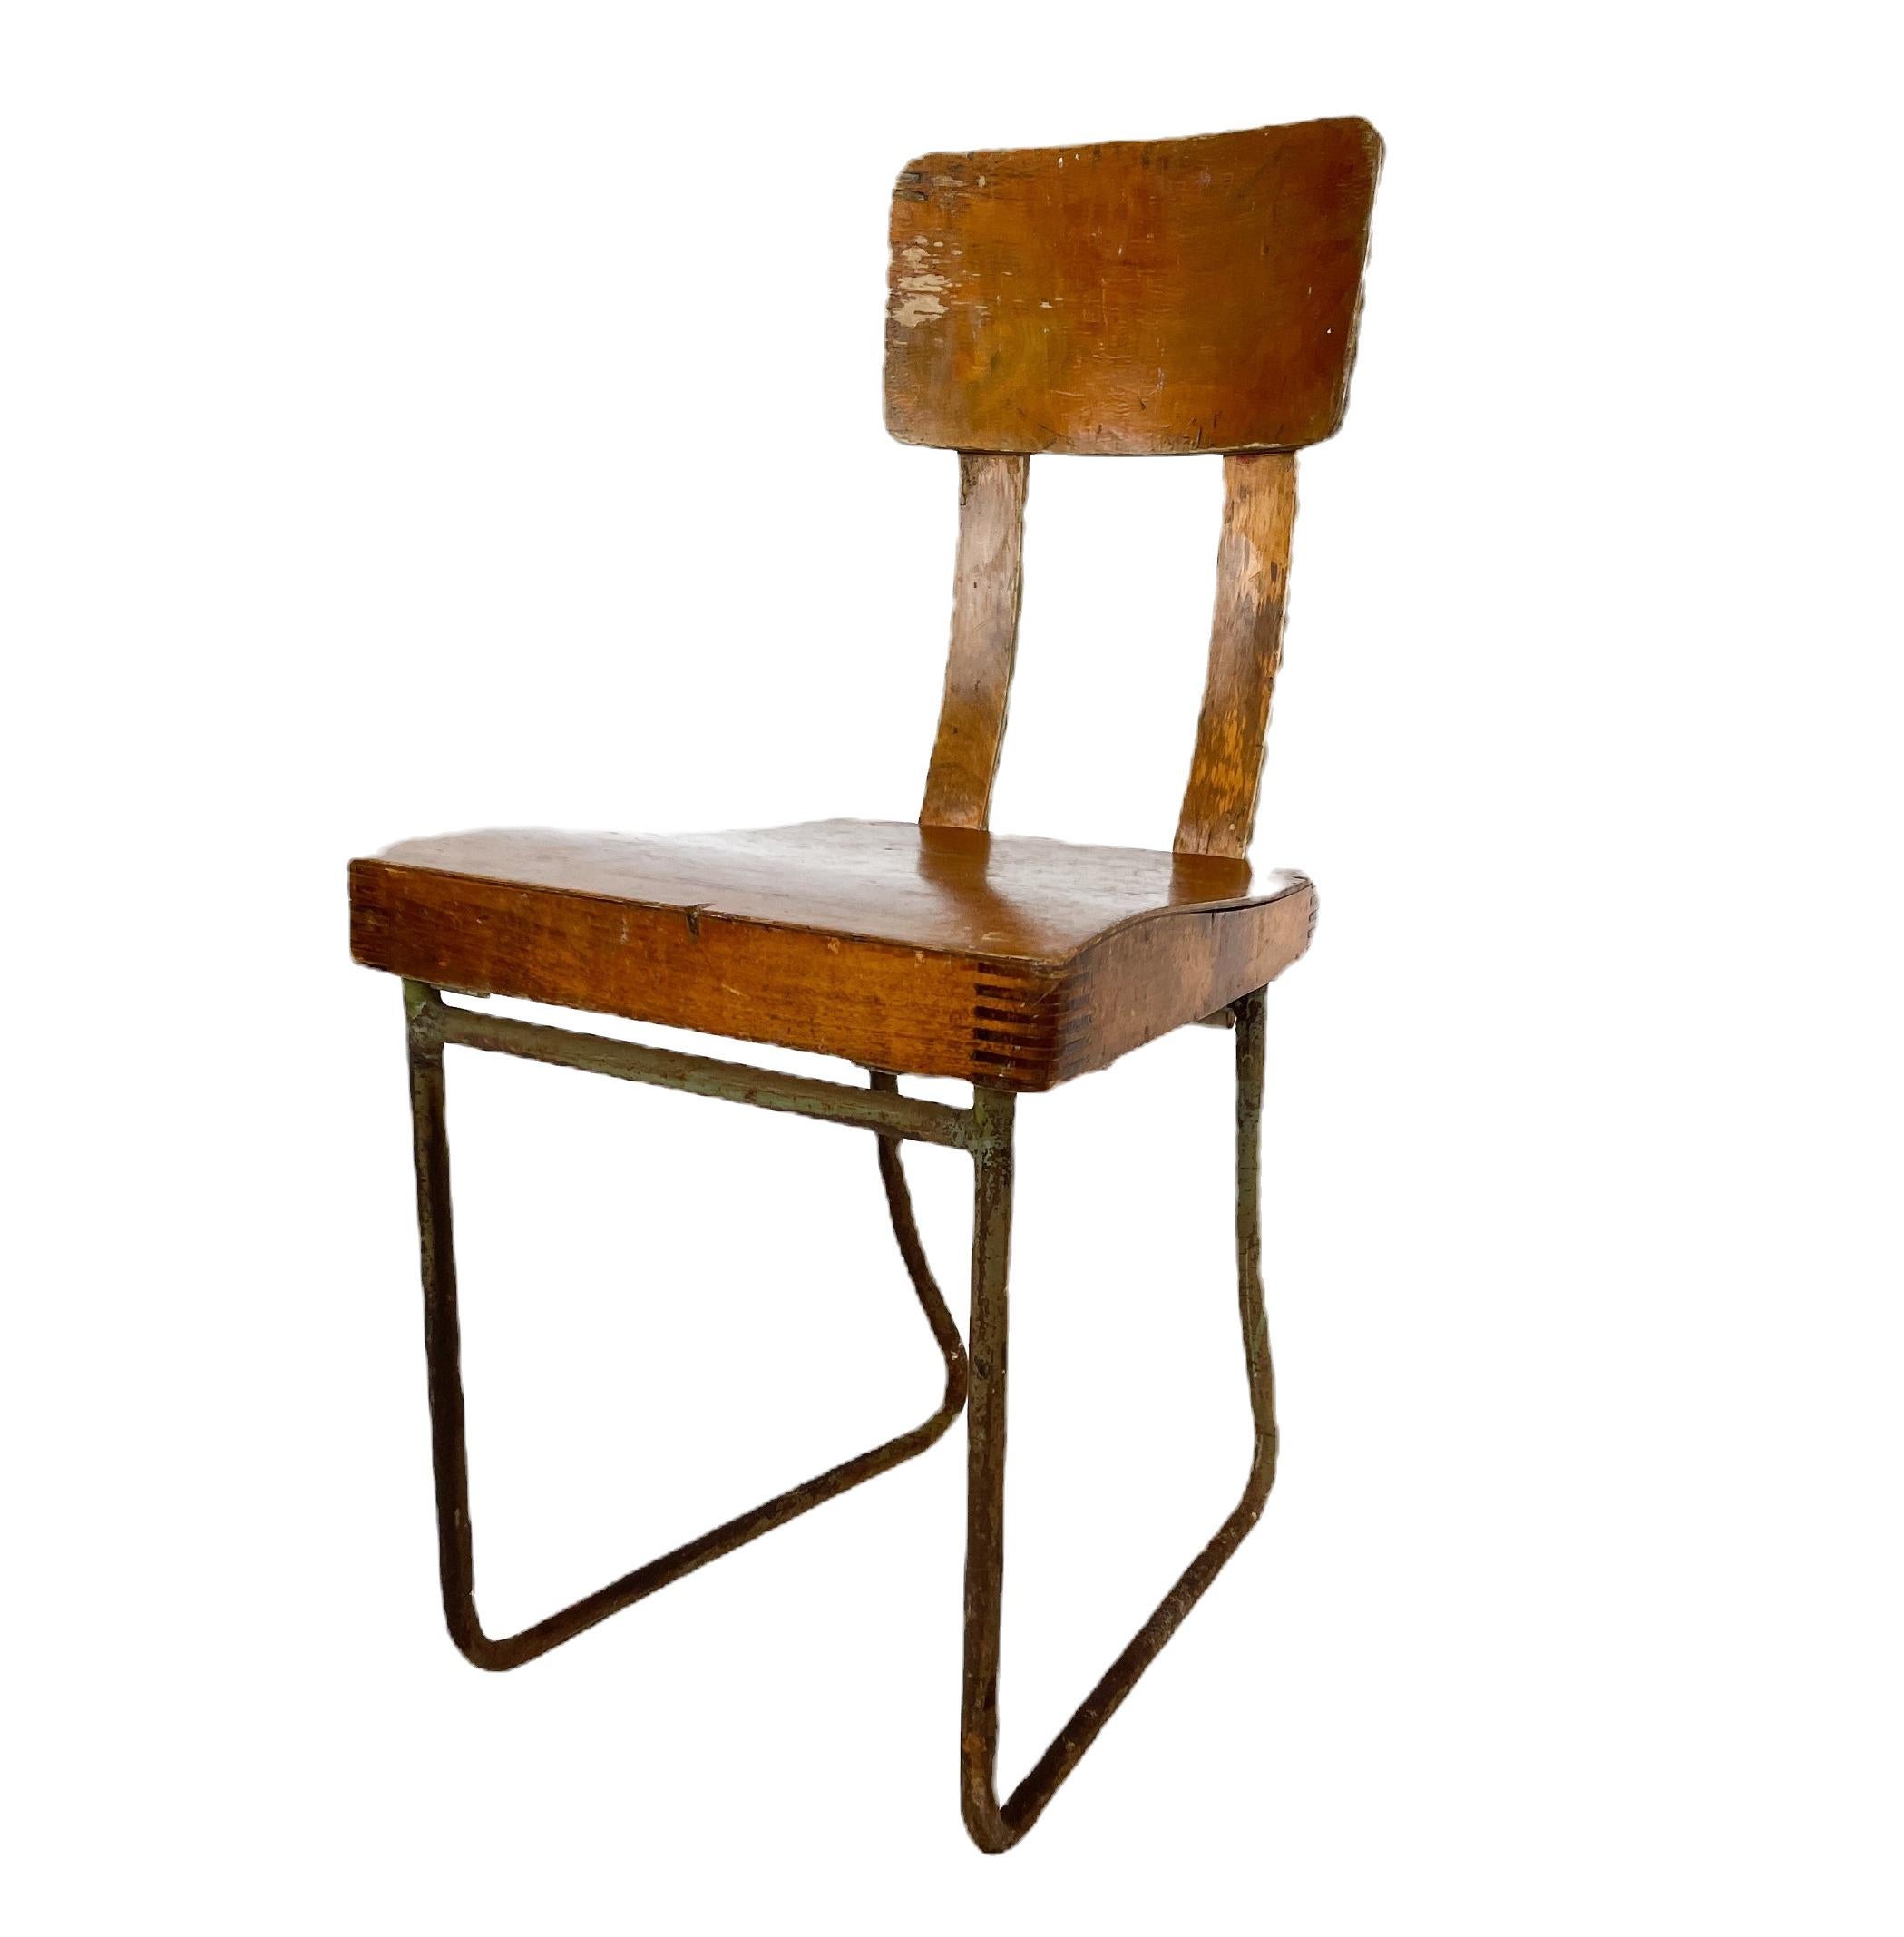 Chaise d'enfant unique influencée par le mouvement Bauhaus et conçue par un designer finlandais non identifié mais remarquablement compétent. Ce chef-d'œuvre présente un siège à jointure digitale, soulignant la précision artisanale pour l'attrait